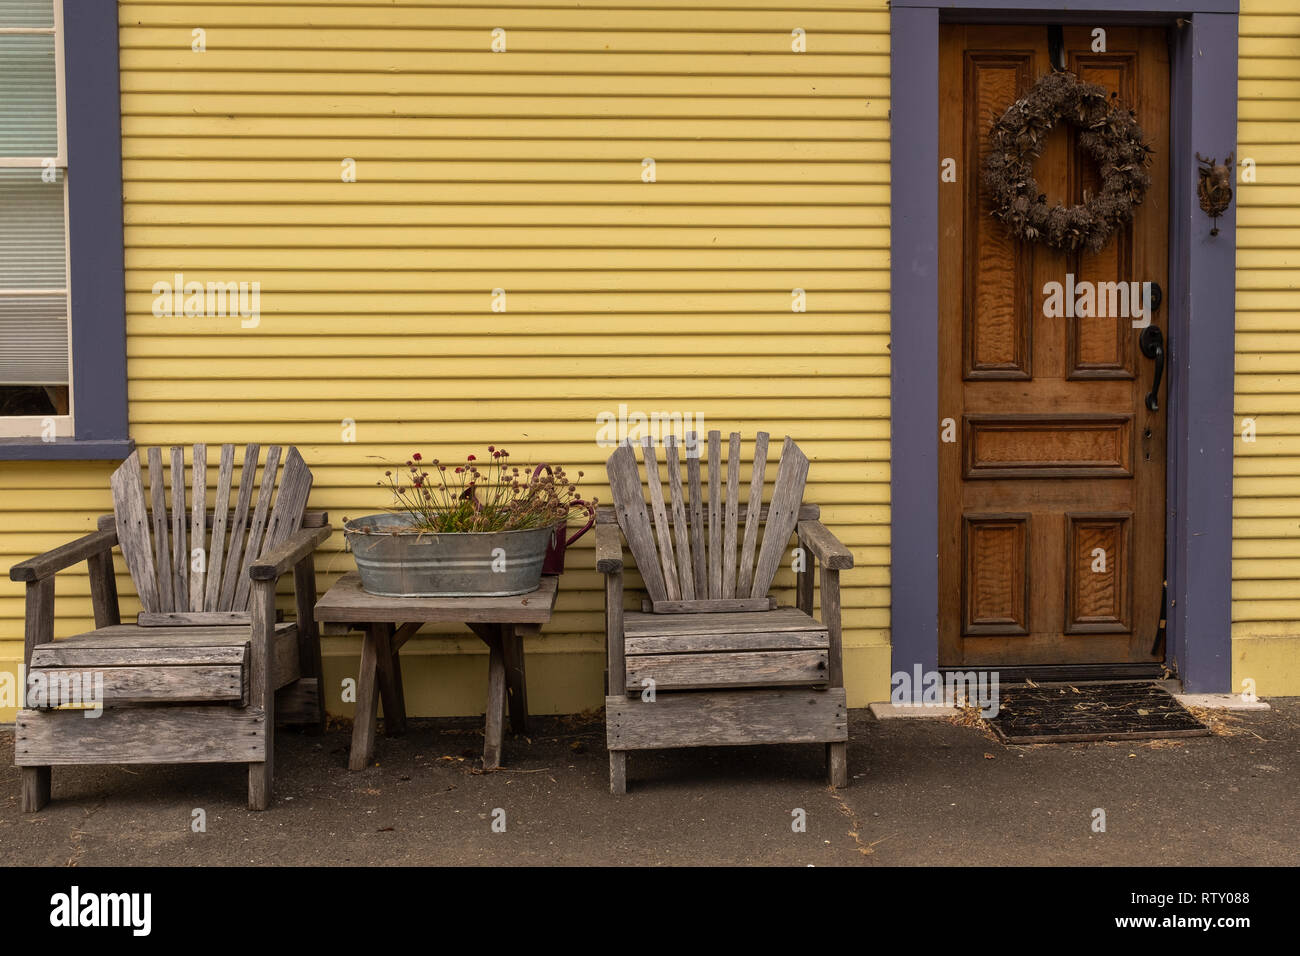 Una coppia di sedie a spiovente fuori la parte anteriore di un dipinto di giallo casa con una corona sulla porta. Foto Stock